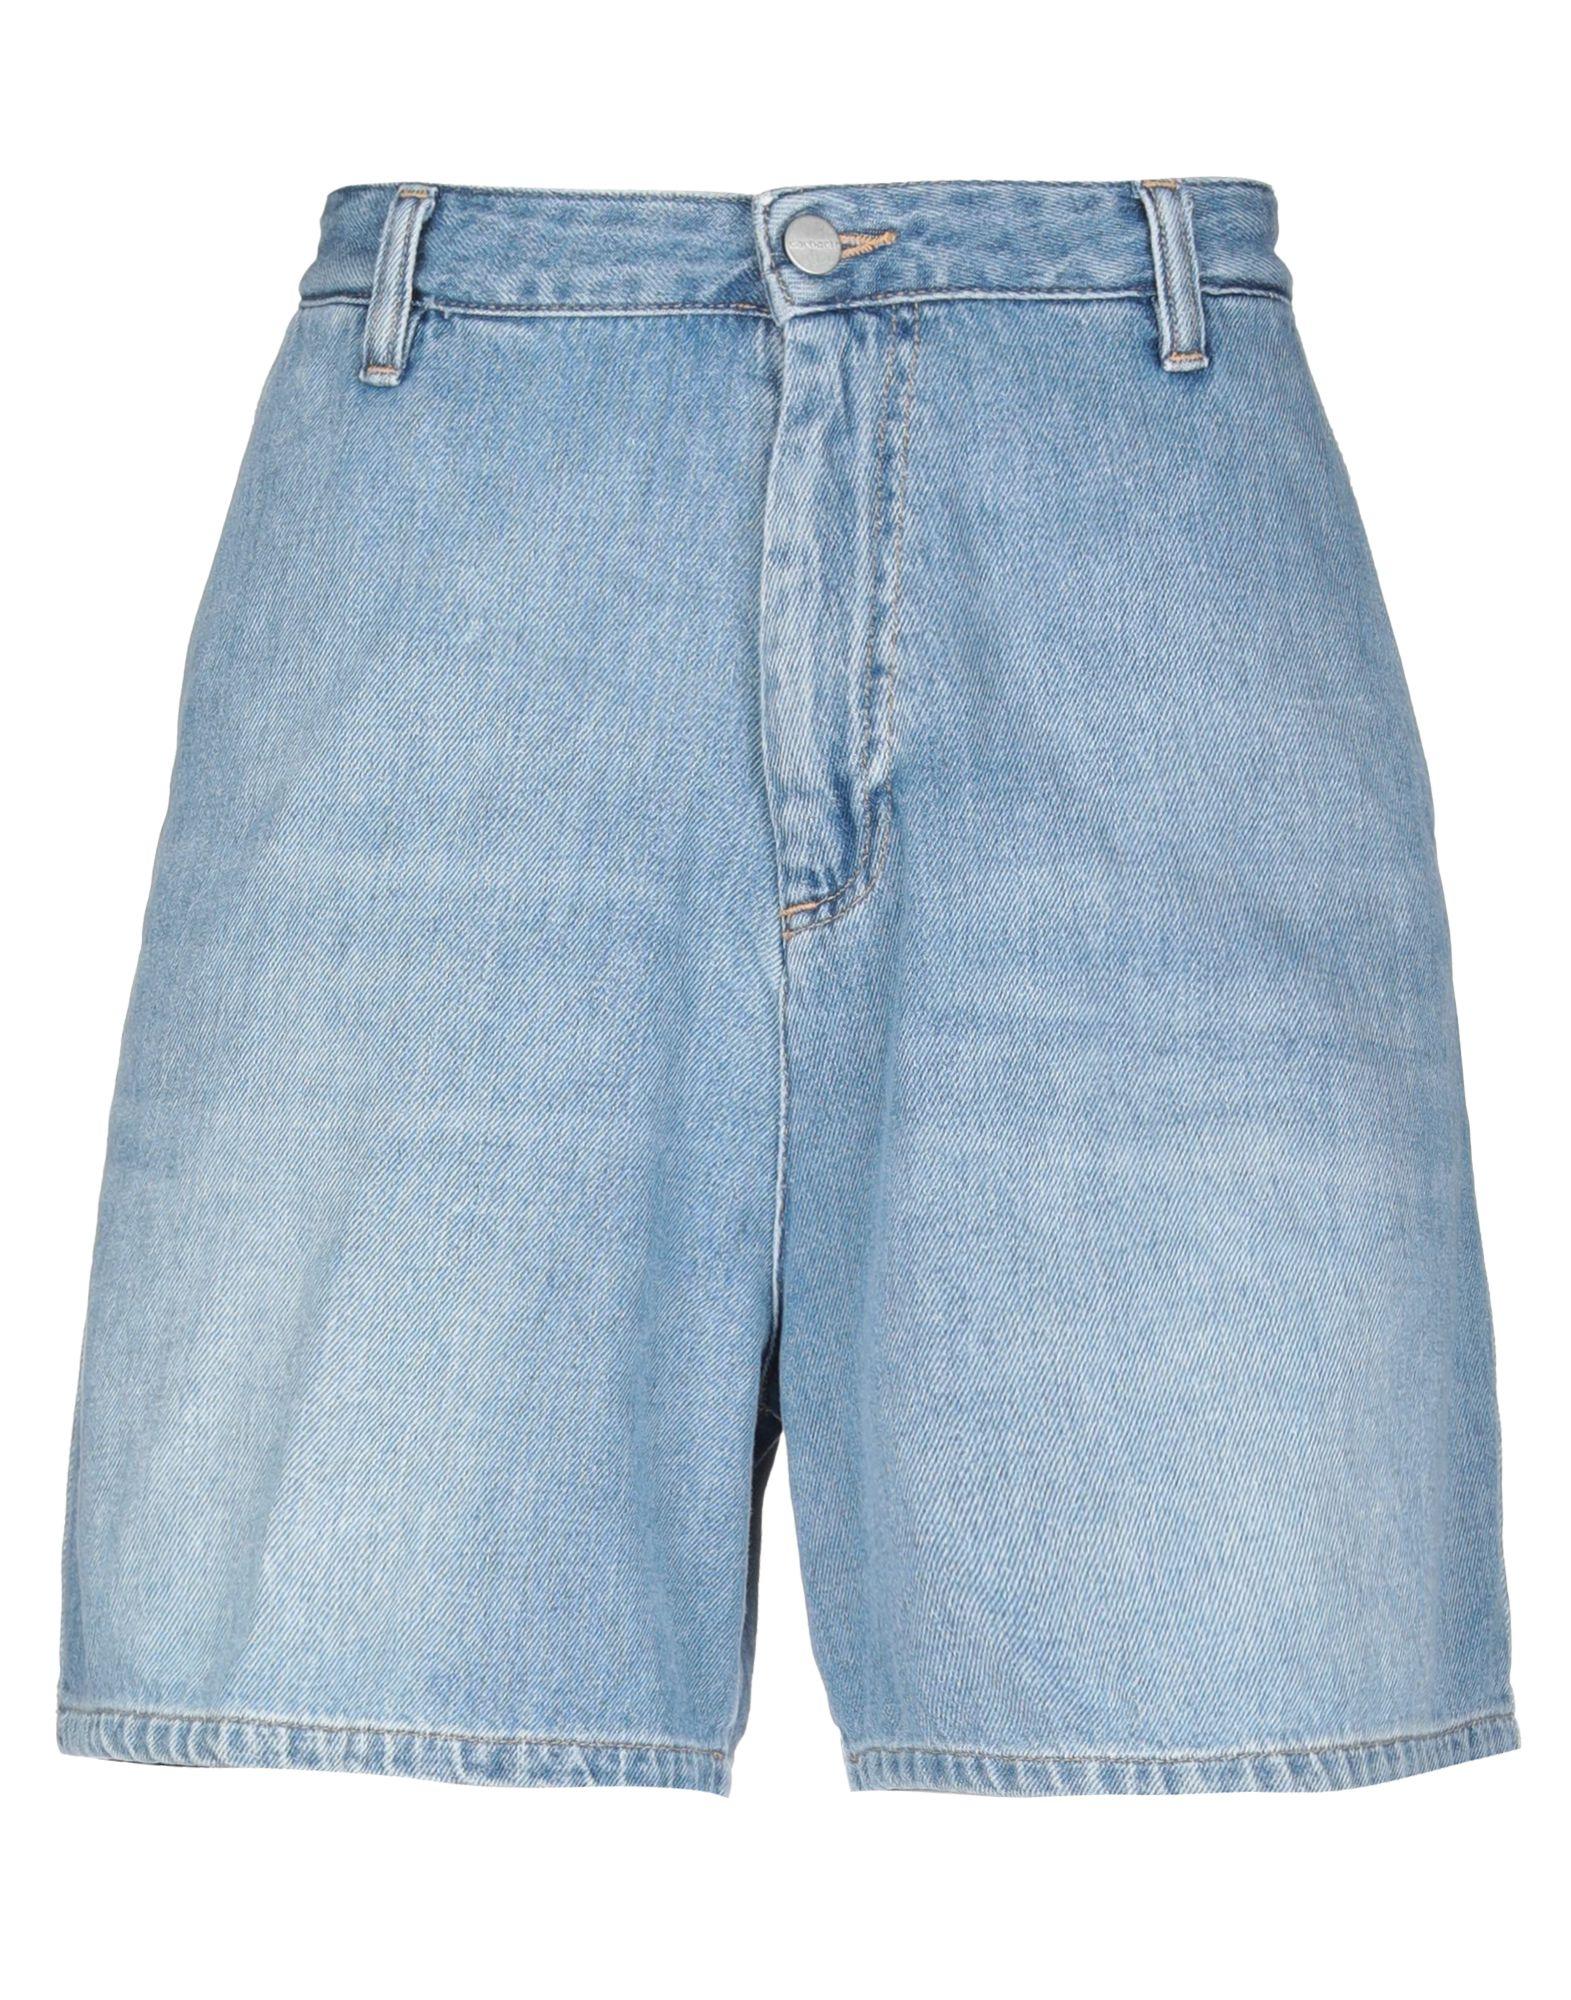 Carhartt Denim Shorts in Blue - Lyst